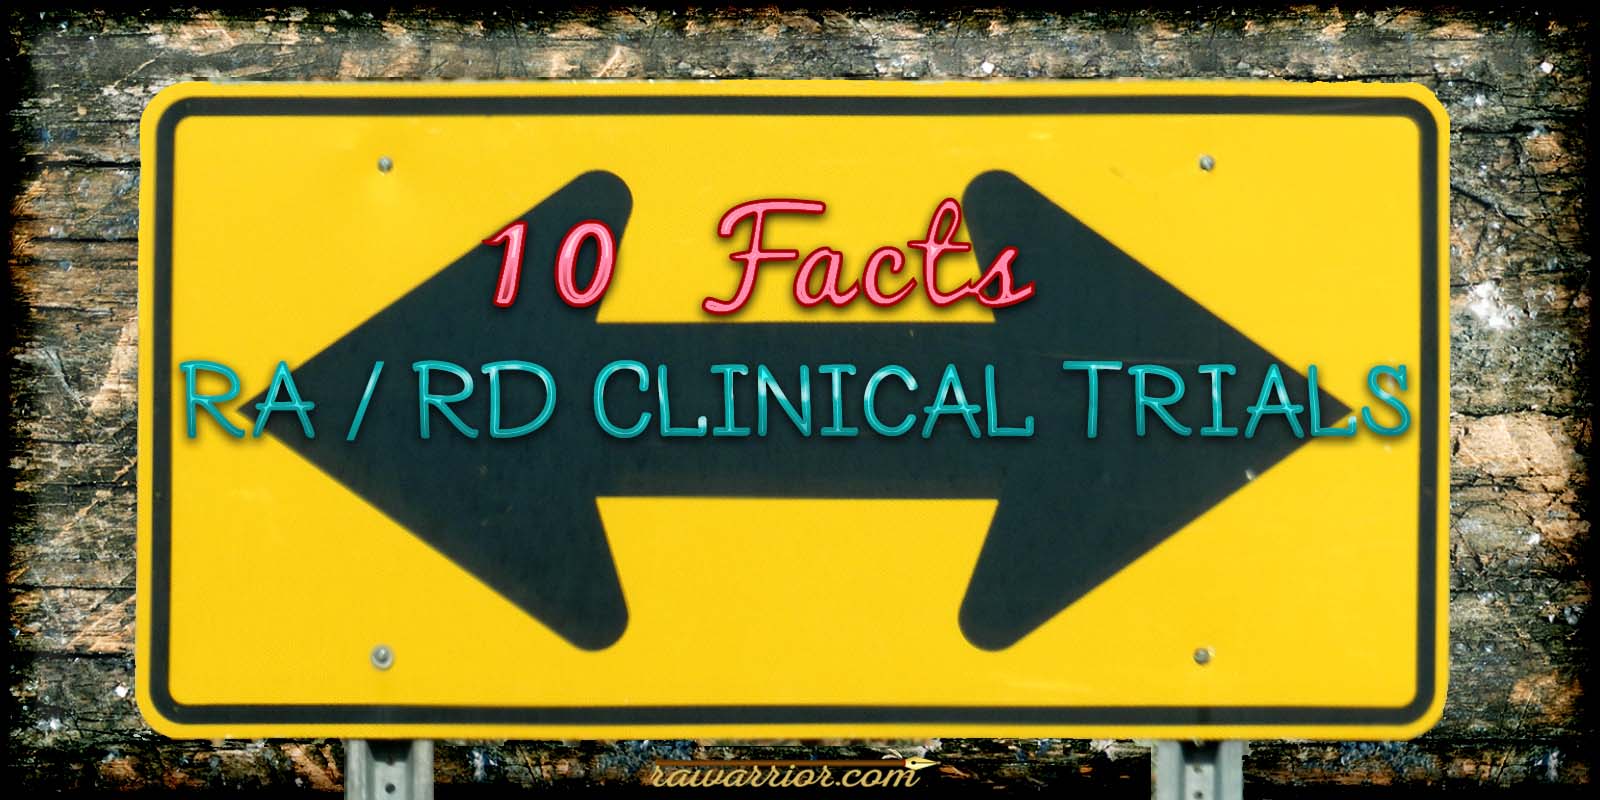 Rheumatoid Arthritis Clinical Trials: 10 Facts